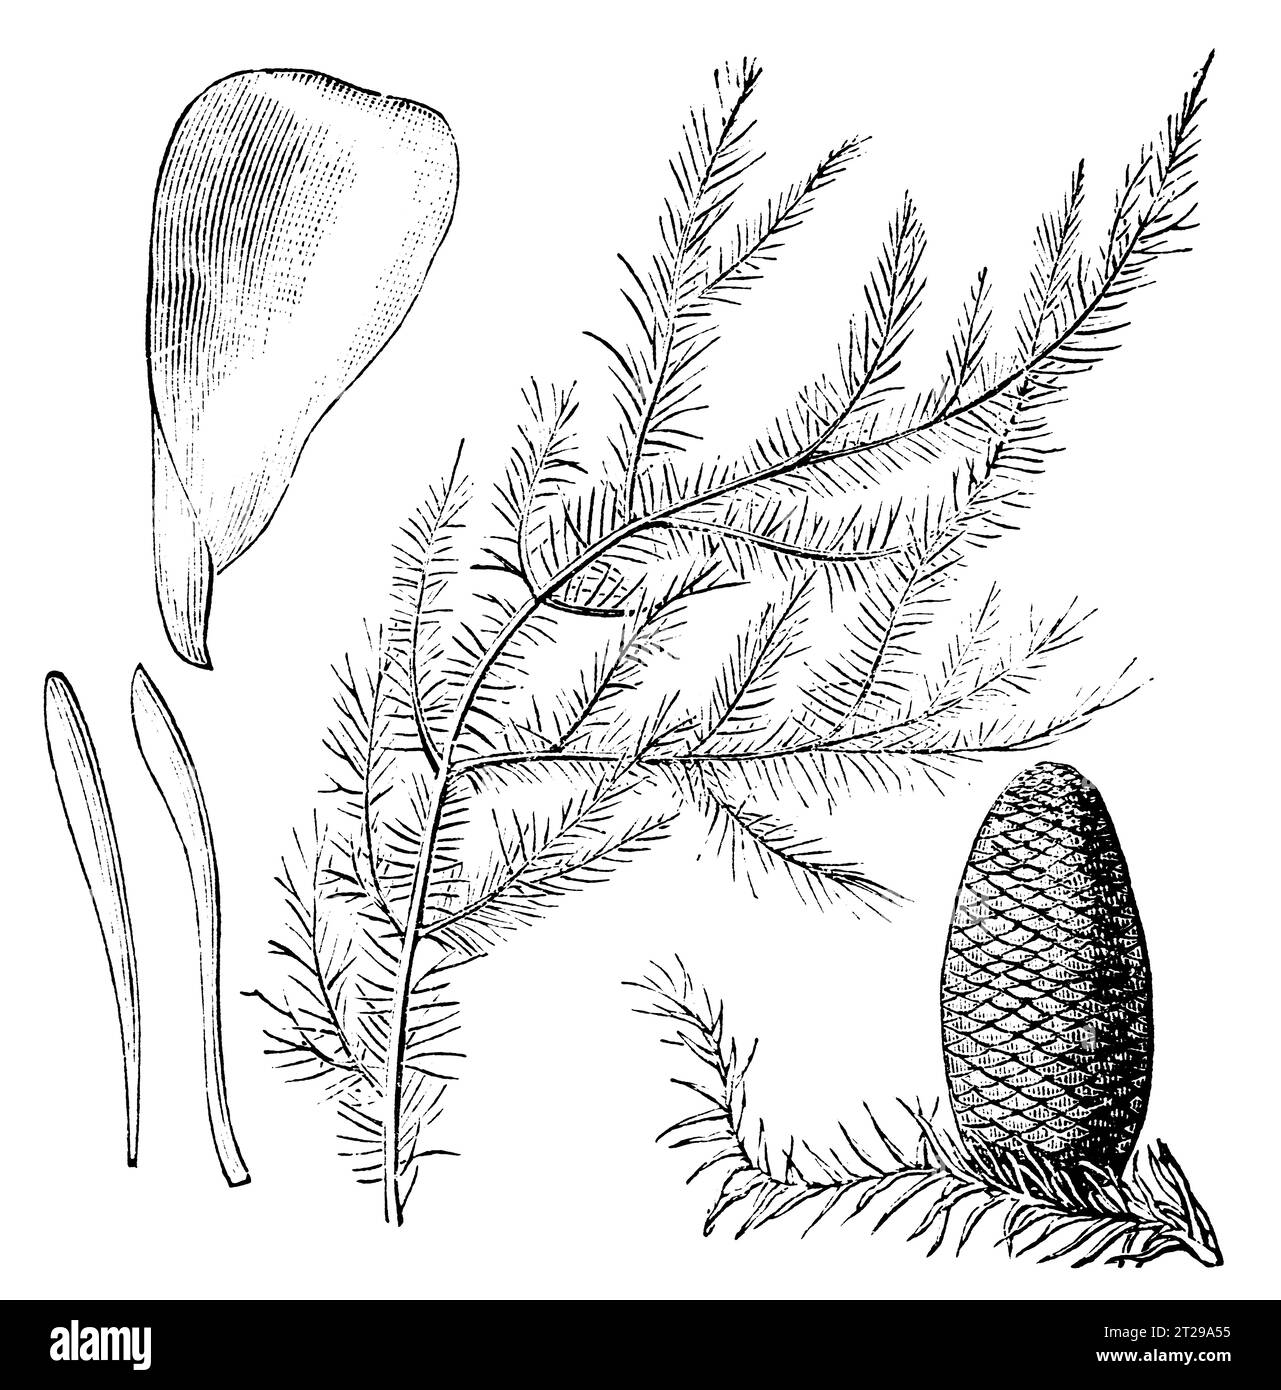 Abies grandis, restauré numériquement à partir de 'The Condensed American Encyclopedia' publié en 1882. Banque D'Images